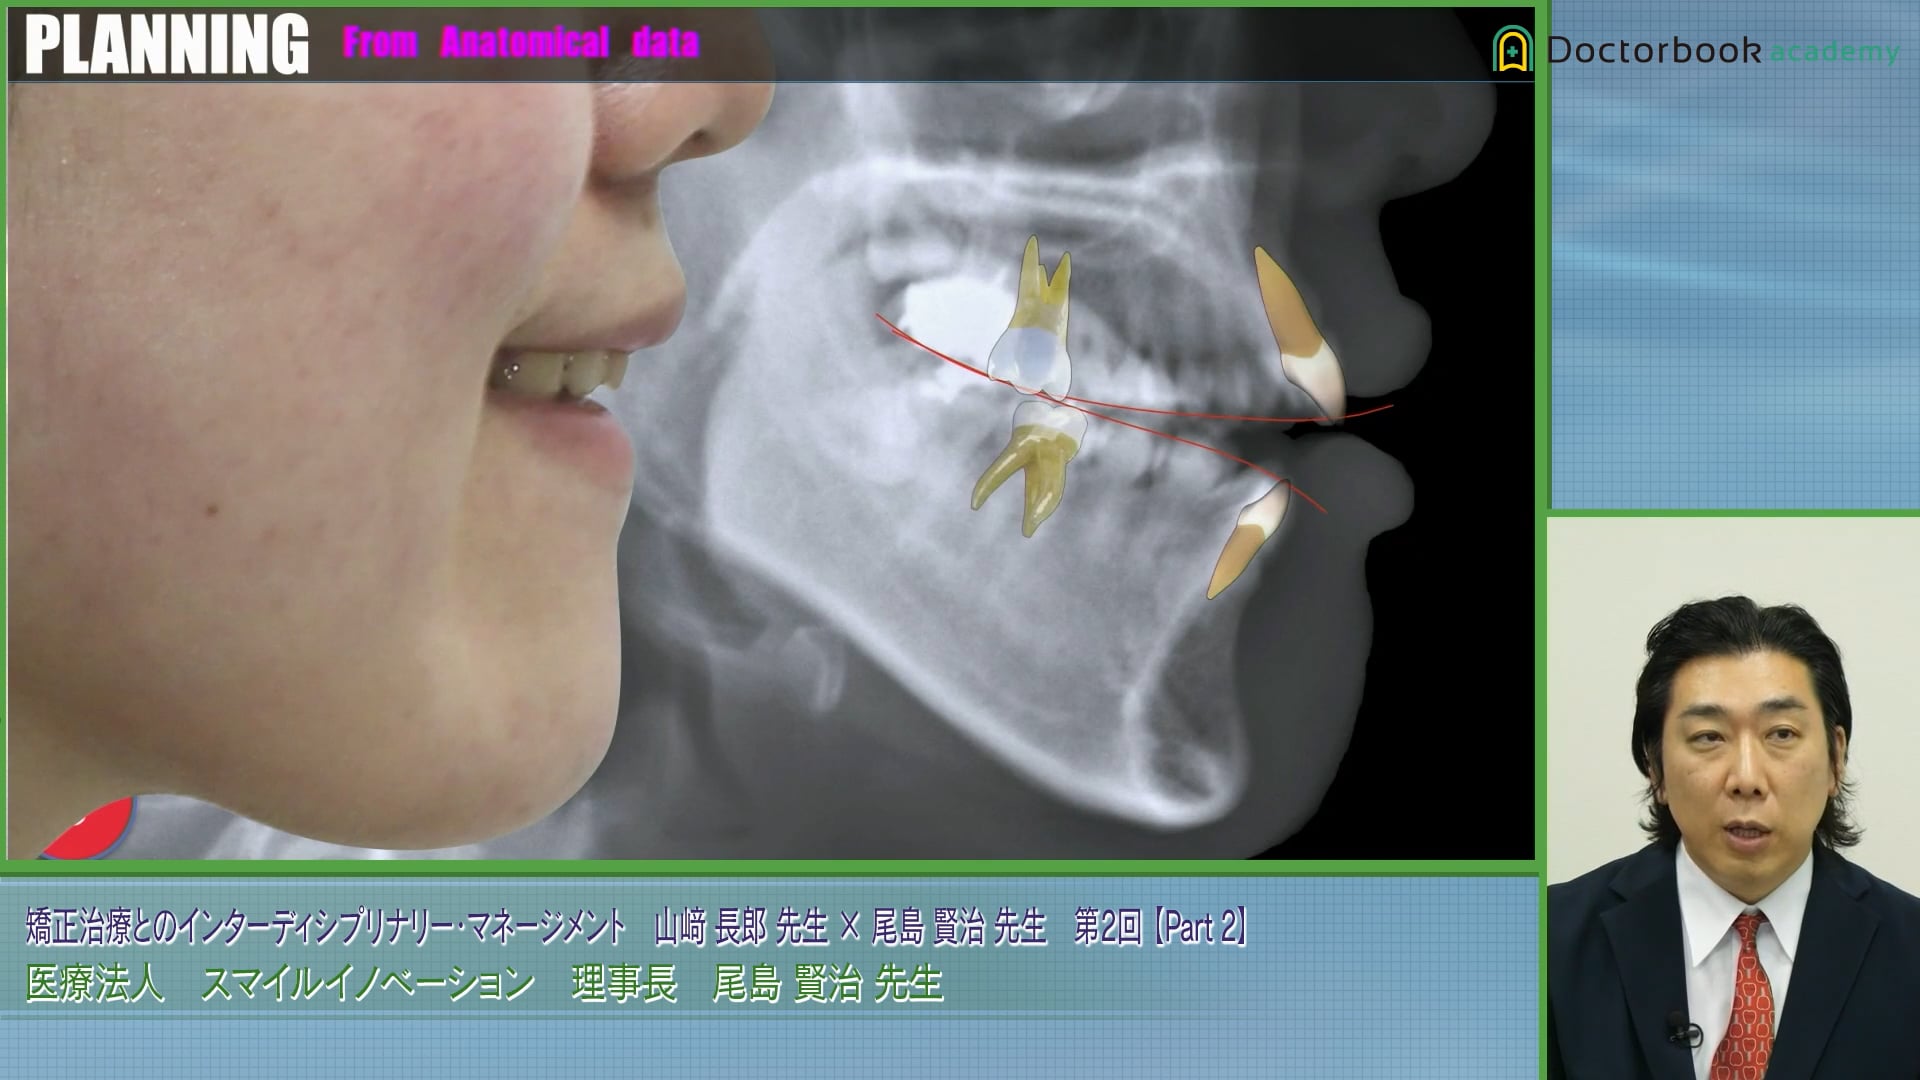 オープンバイト症例と抜歯が必要な叢生の難症例における治療プランの選択│尾島賢治先生 #2